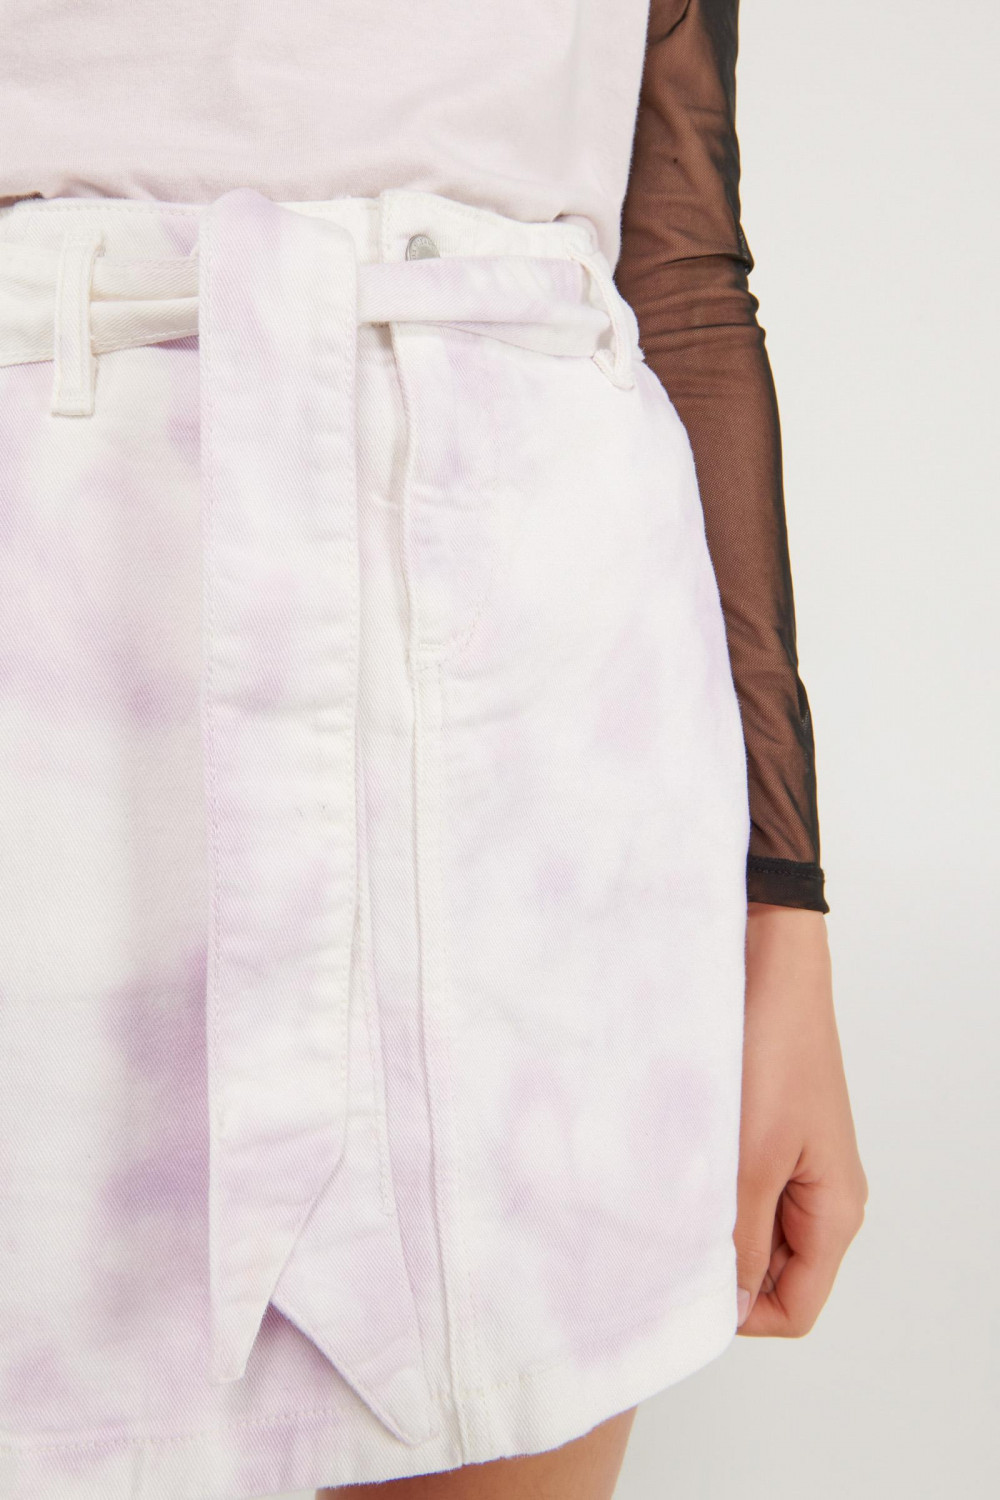 Falda en drill lila medio tie dye con cinturón en tela